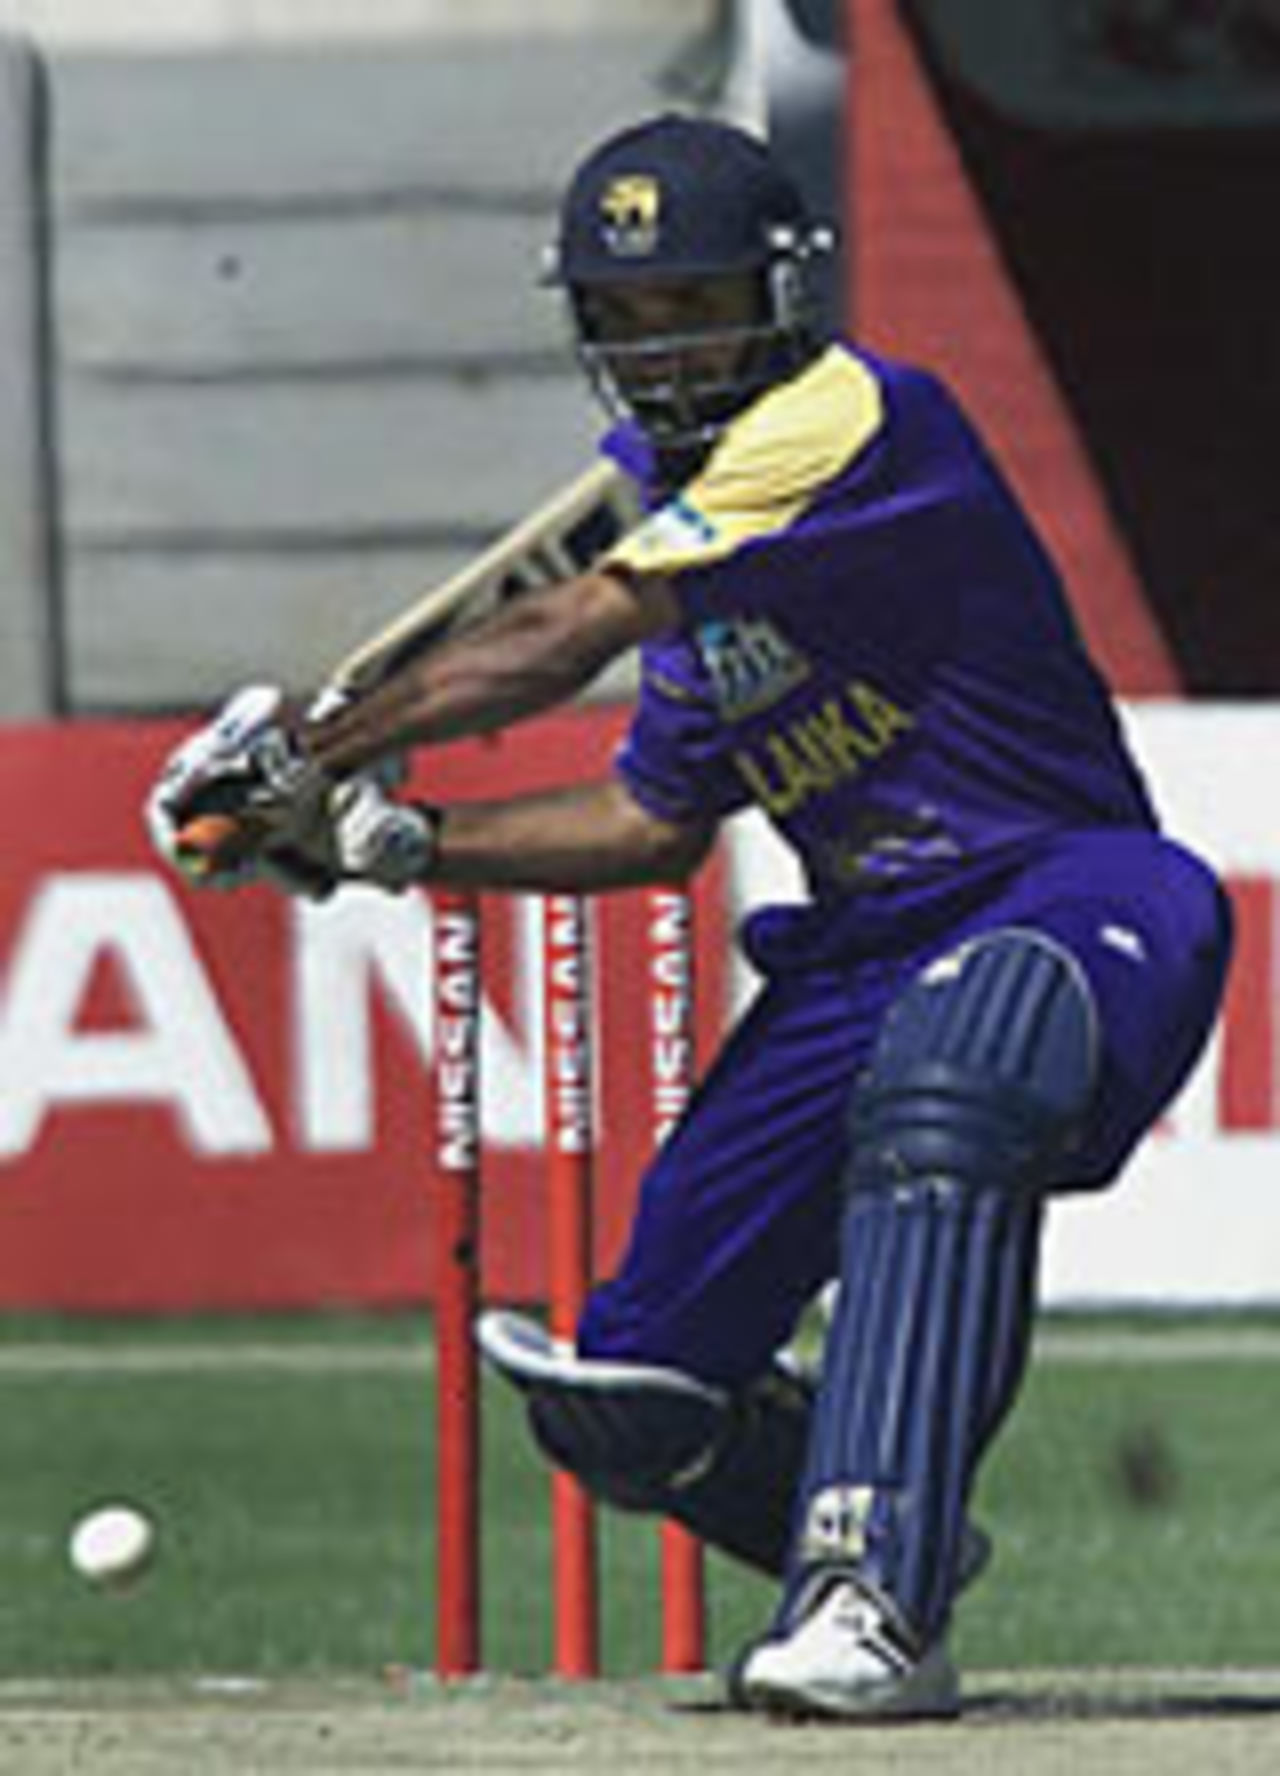 Tillakaratne Dilshan, Zimbabwe v Sri Lanka, 5th ODI, Harare, April 29, 2004